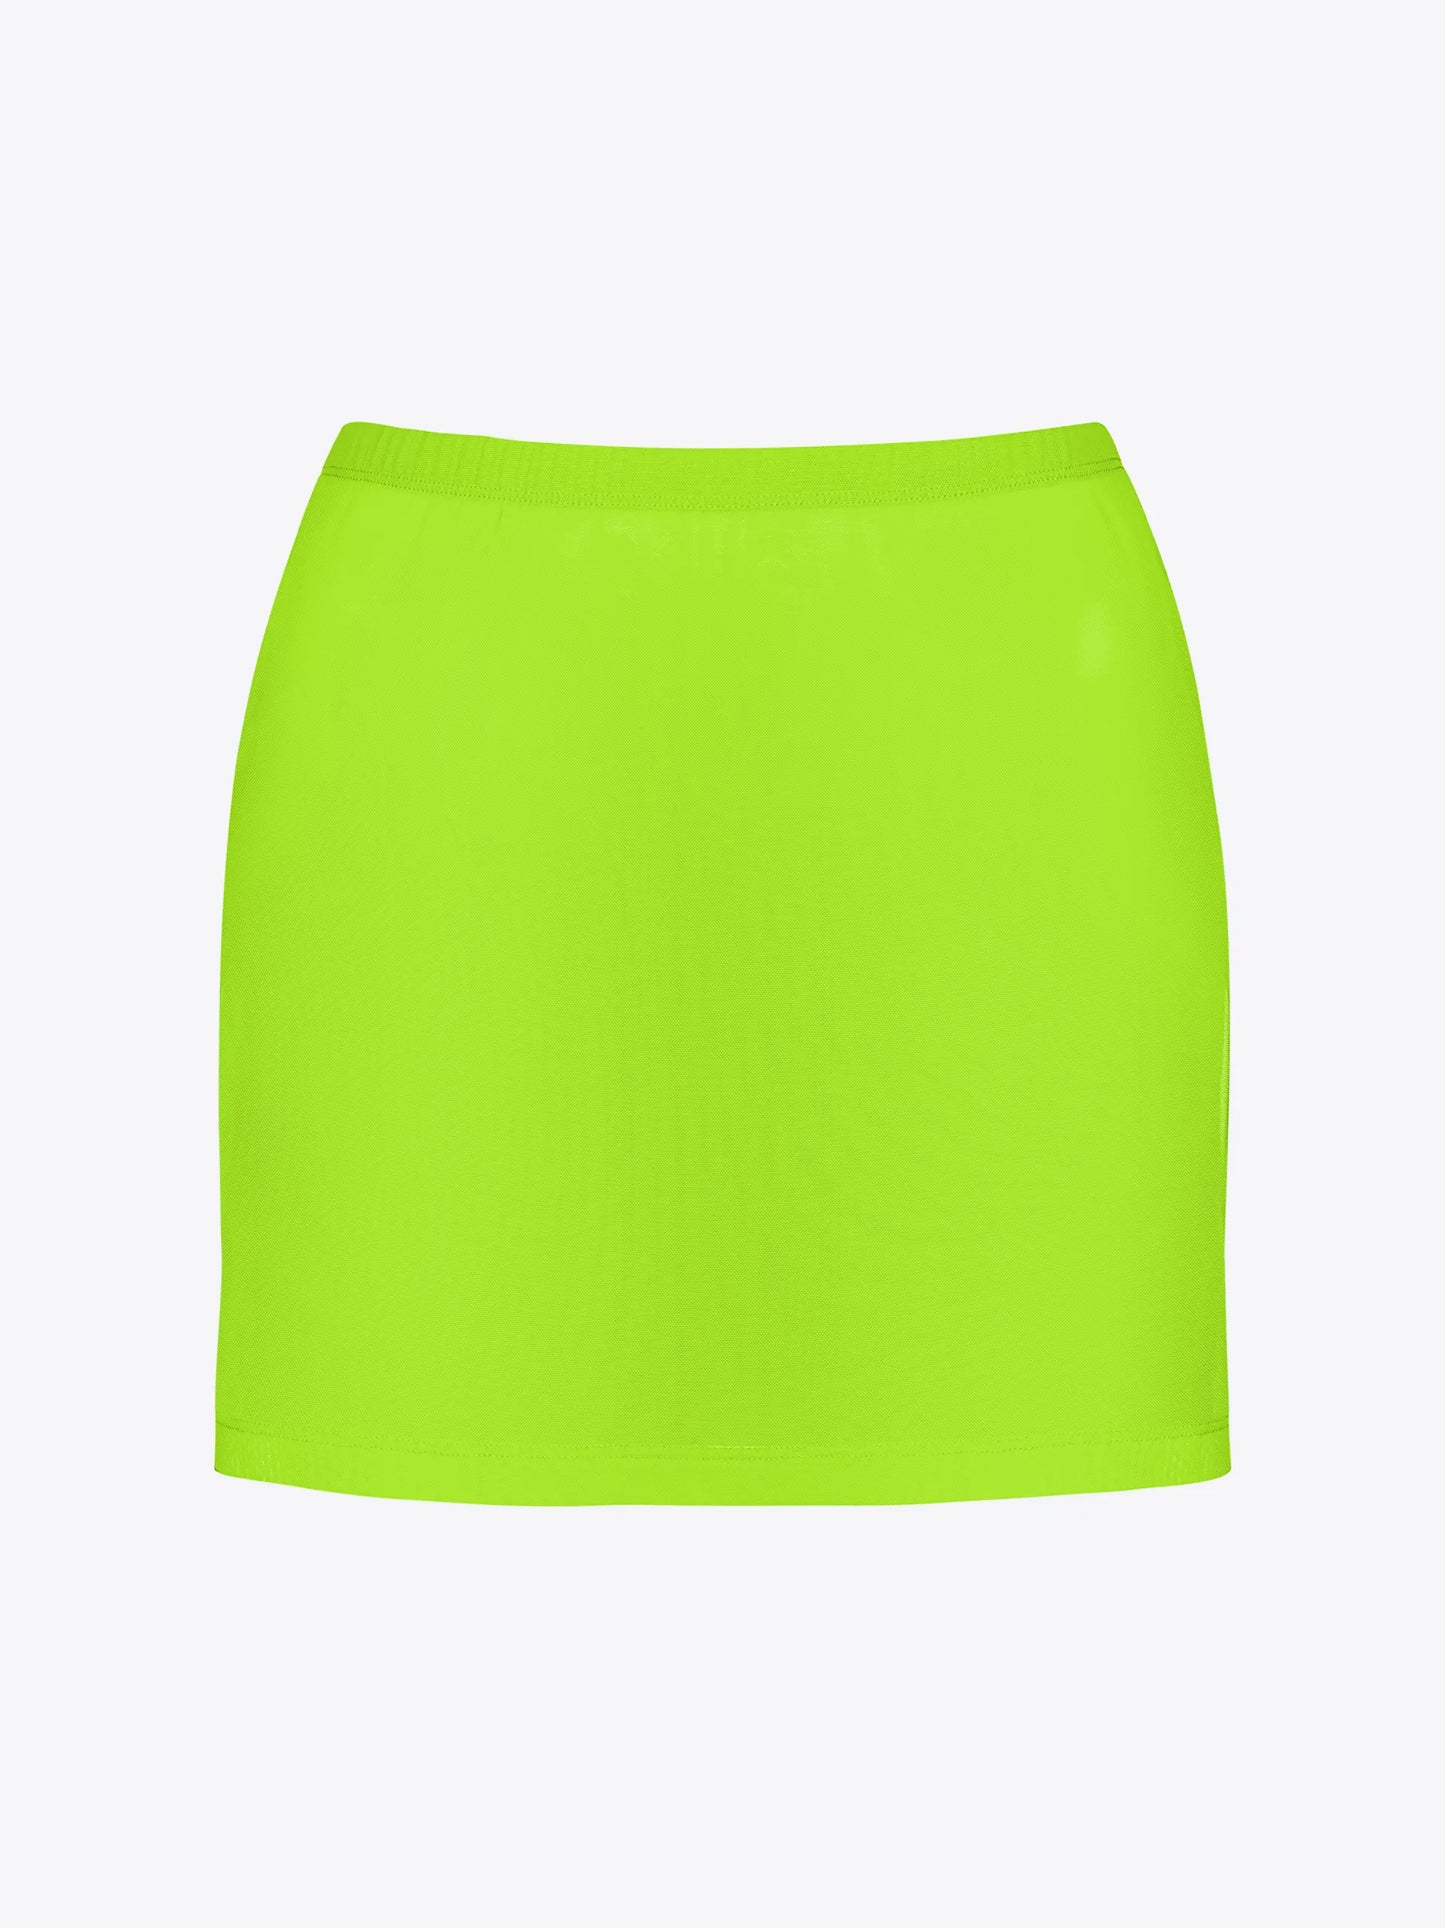 
                  
                    Sunny Skirt
                  
                